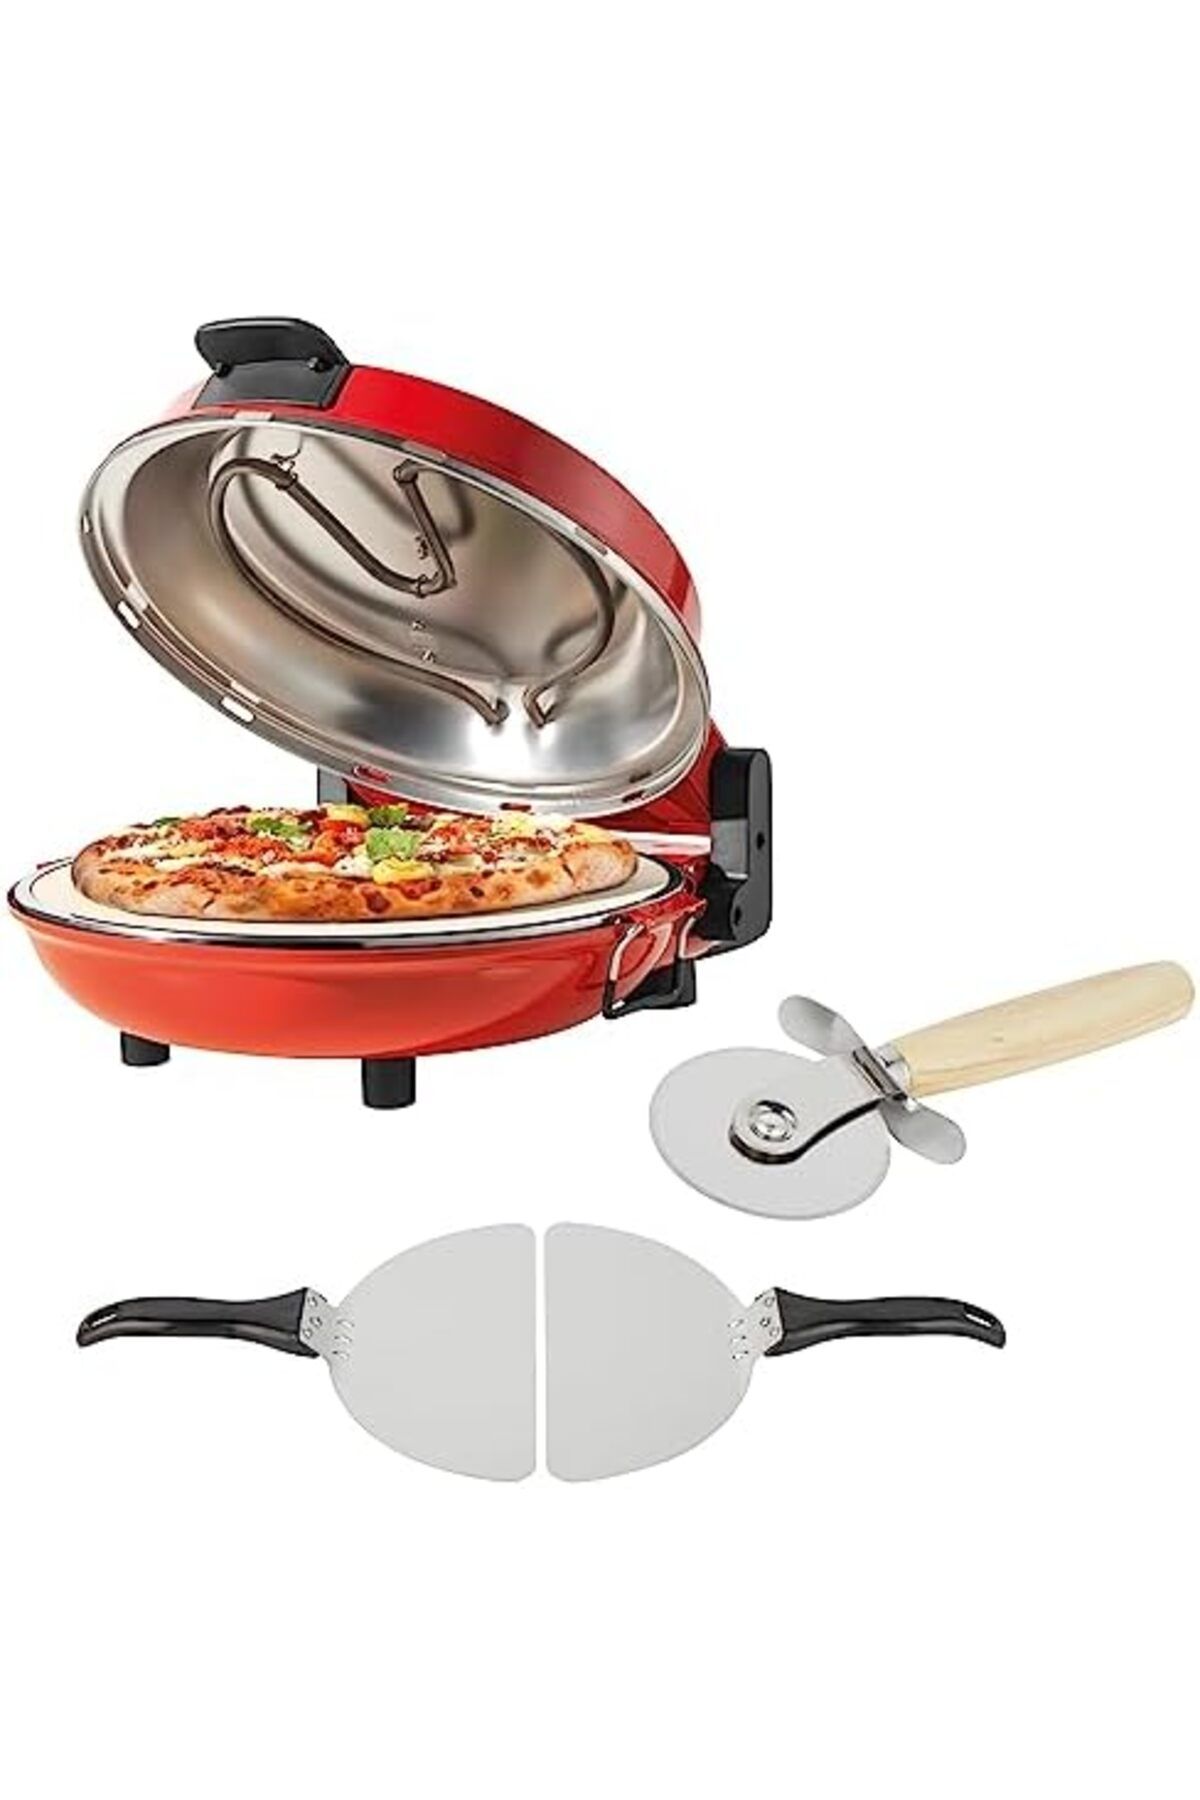 Petra PT5666VDE İç Mekan Elektrikli Pizza Fırını - 1200W, 5 ısı ayarı, hızlı ısıtma, 5 dakikada